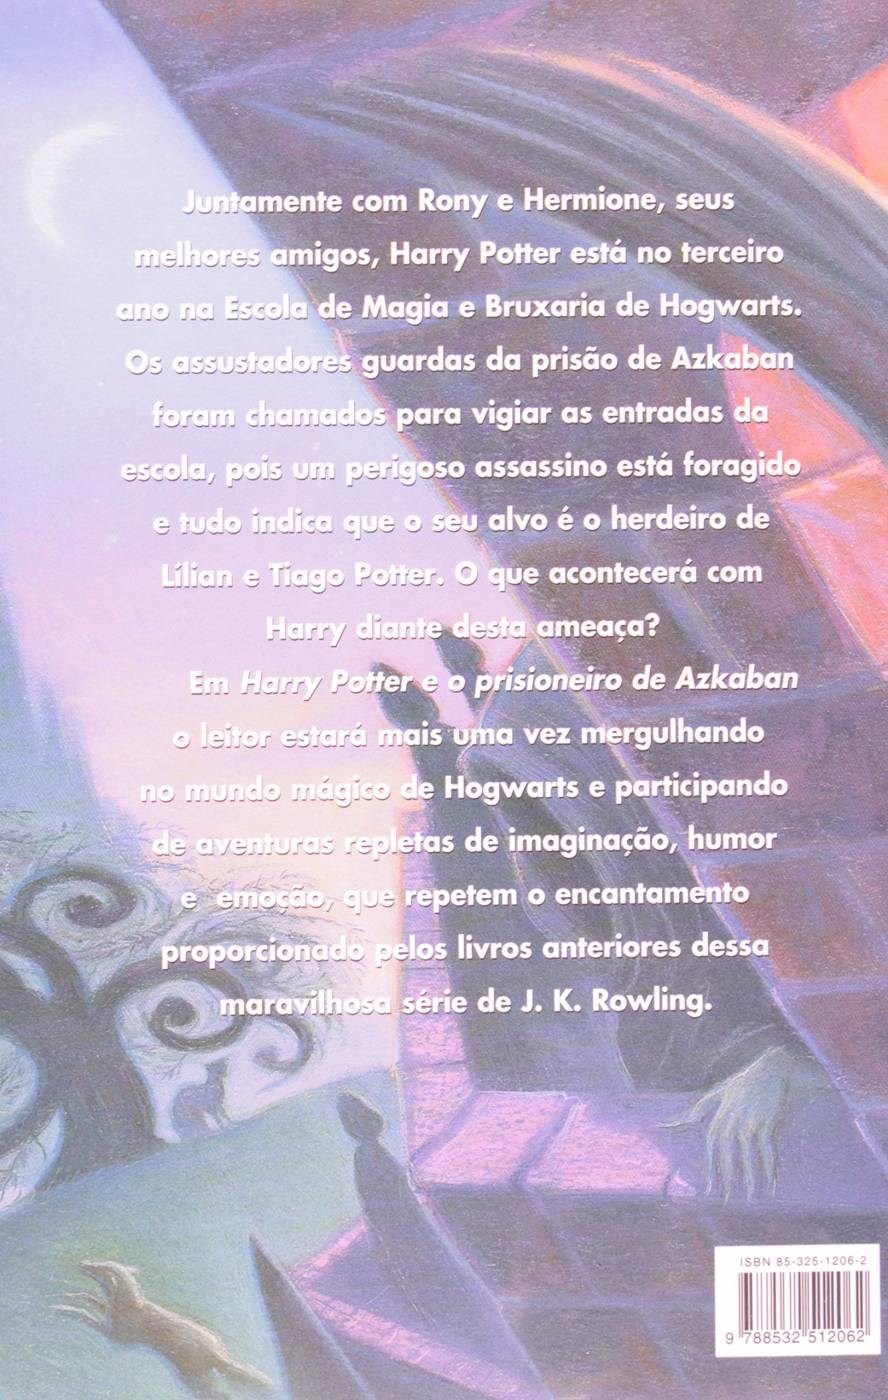 Quadro Decorativo Harry Potter e o Prisioneiro de Azkaban